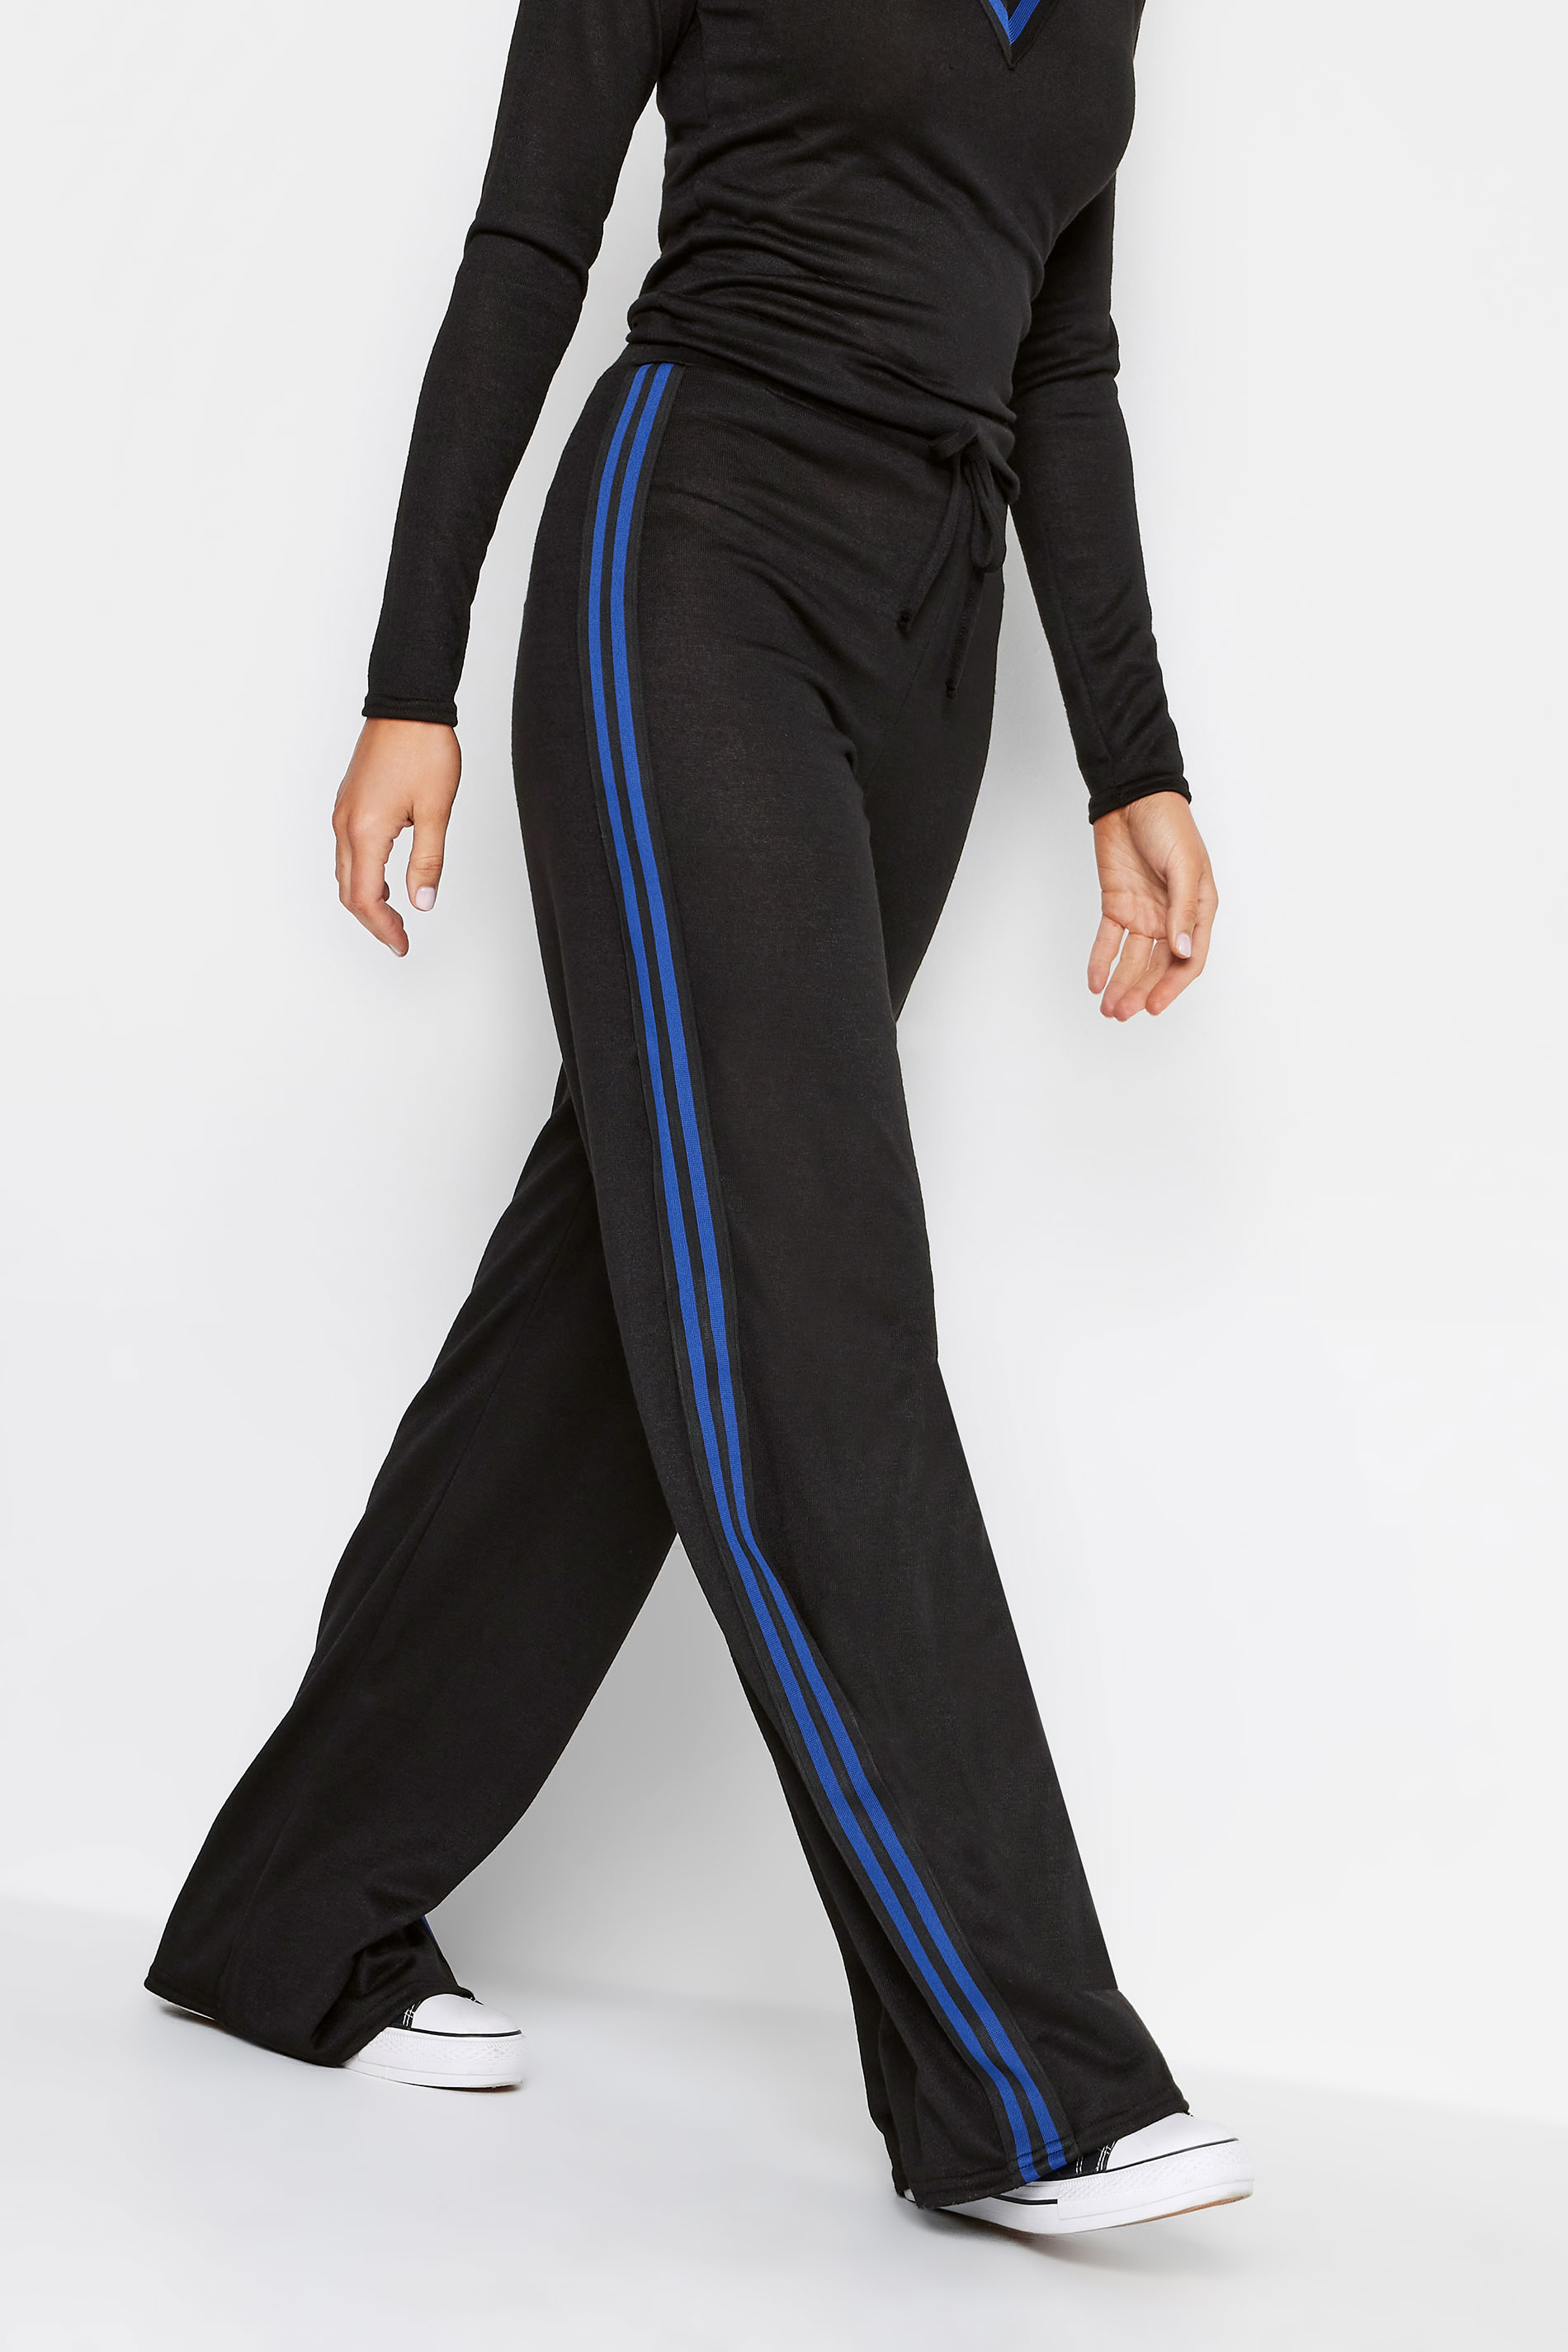 LTS Tall Women's Black & Blue Side Stripe Wide Leg Trousers | Long Tall Sally 1